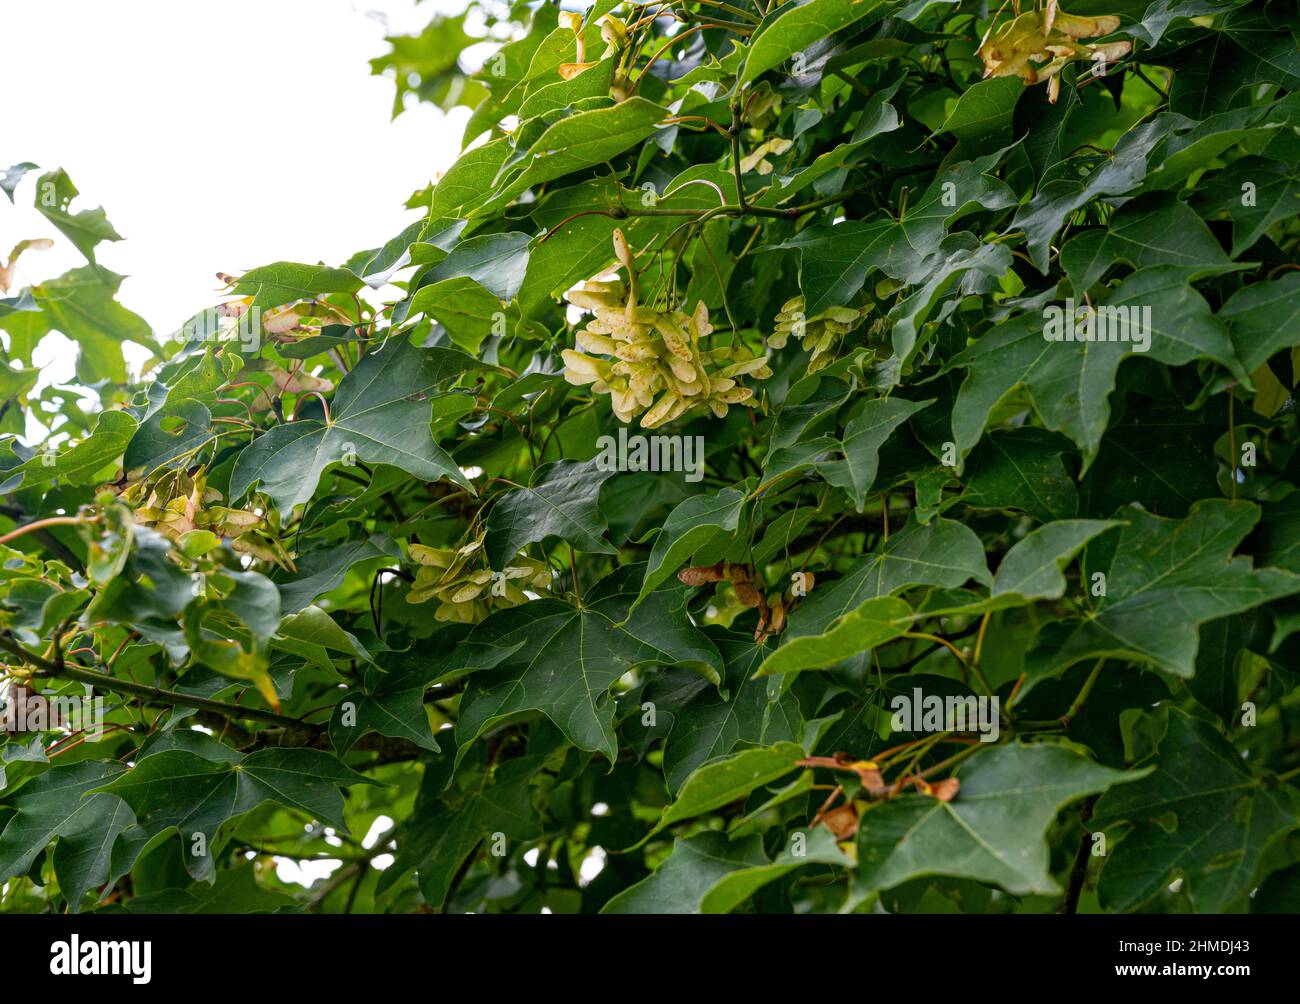 Acer cappadocicum, Acer laetum, érable Cappadocien, Acer colchicum, Sapindaceae. Feuillage d'érable à la fin de l'été, avec des gousses de graines formées. Banque D'Images